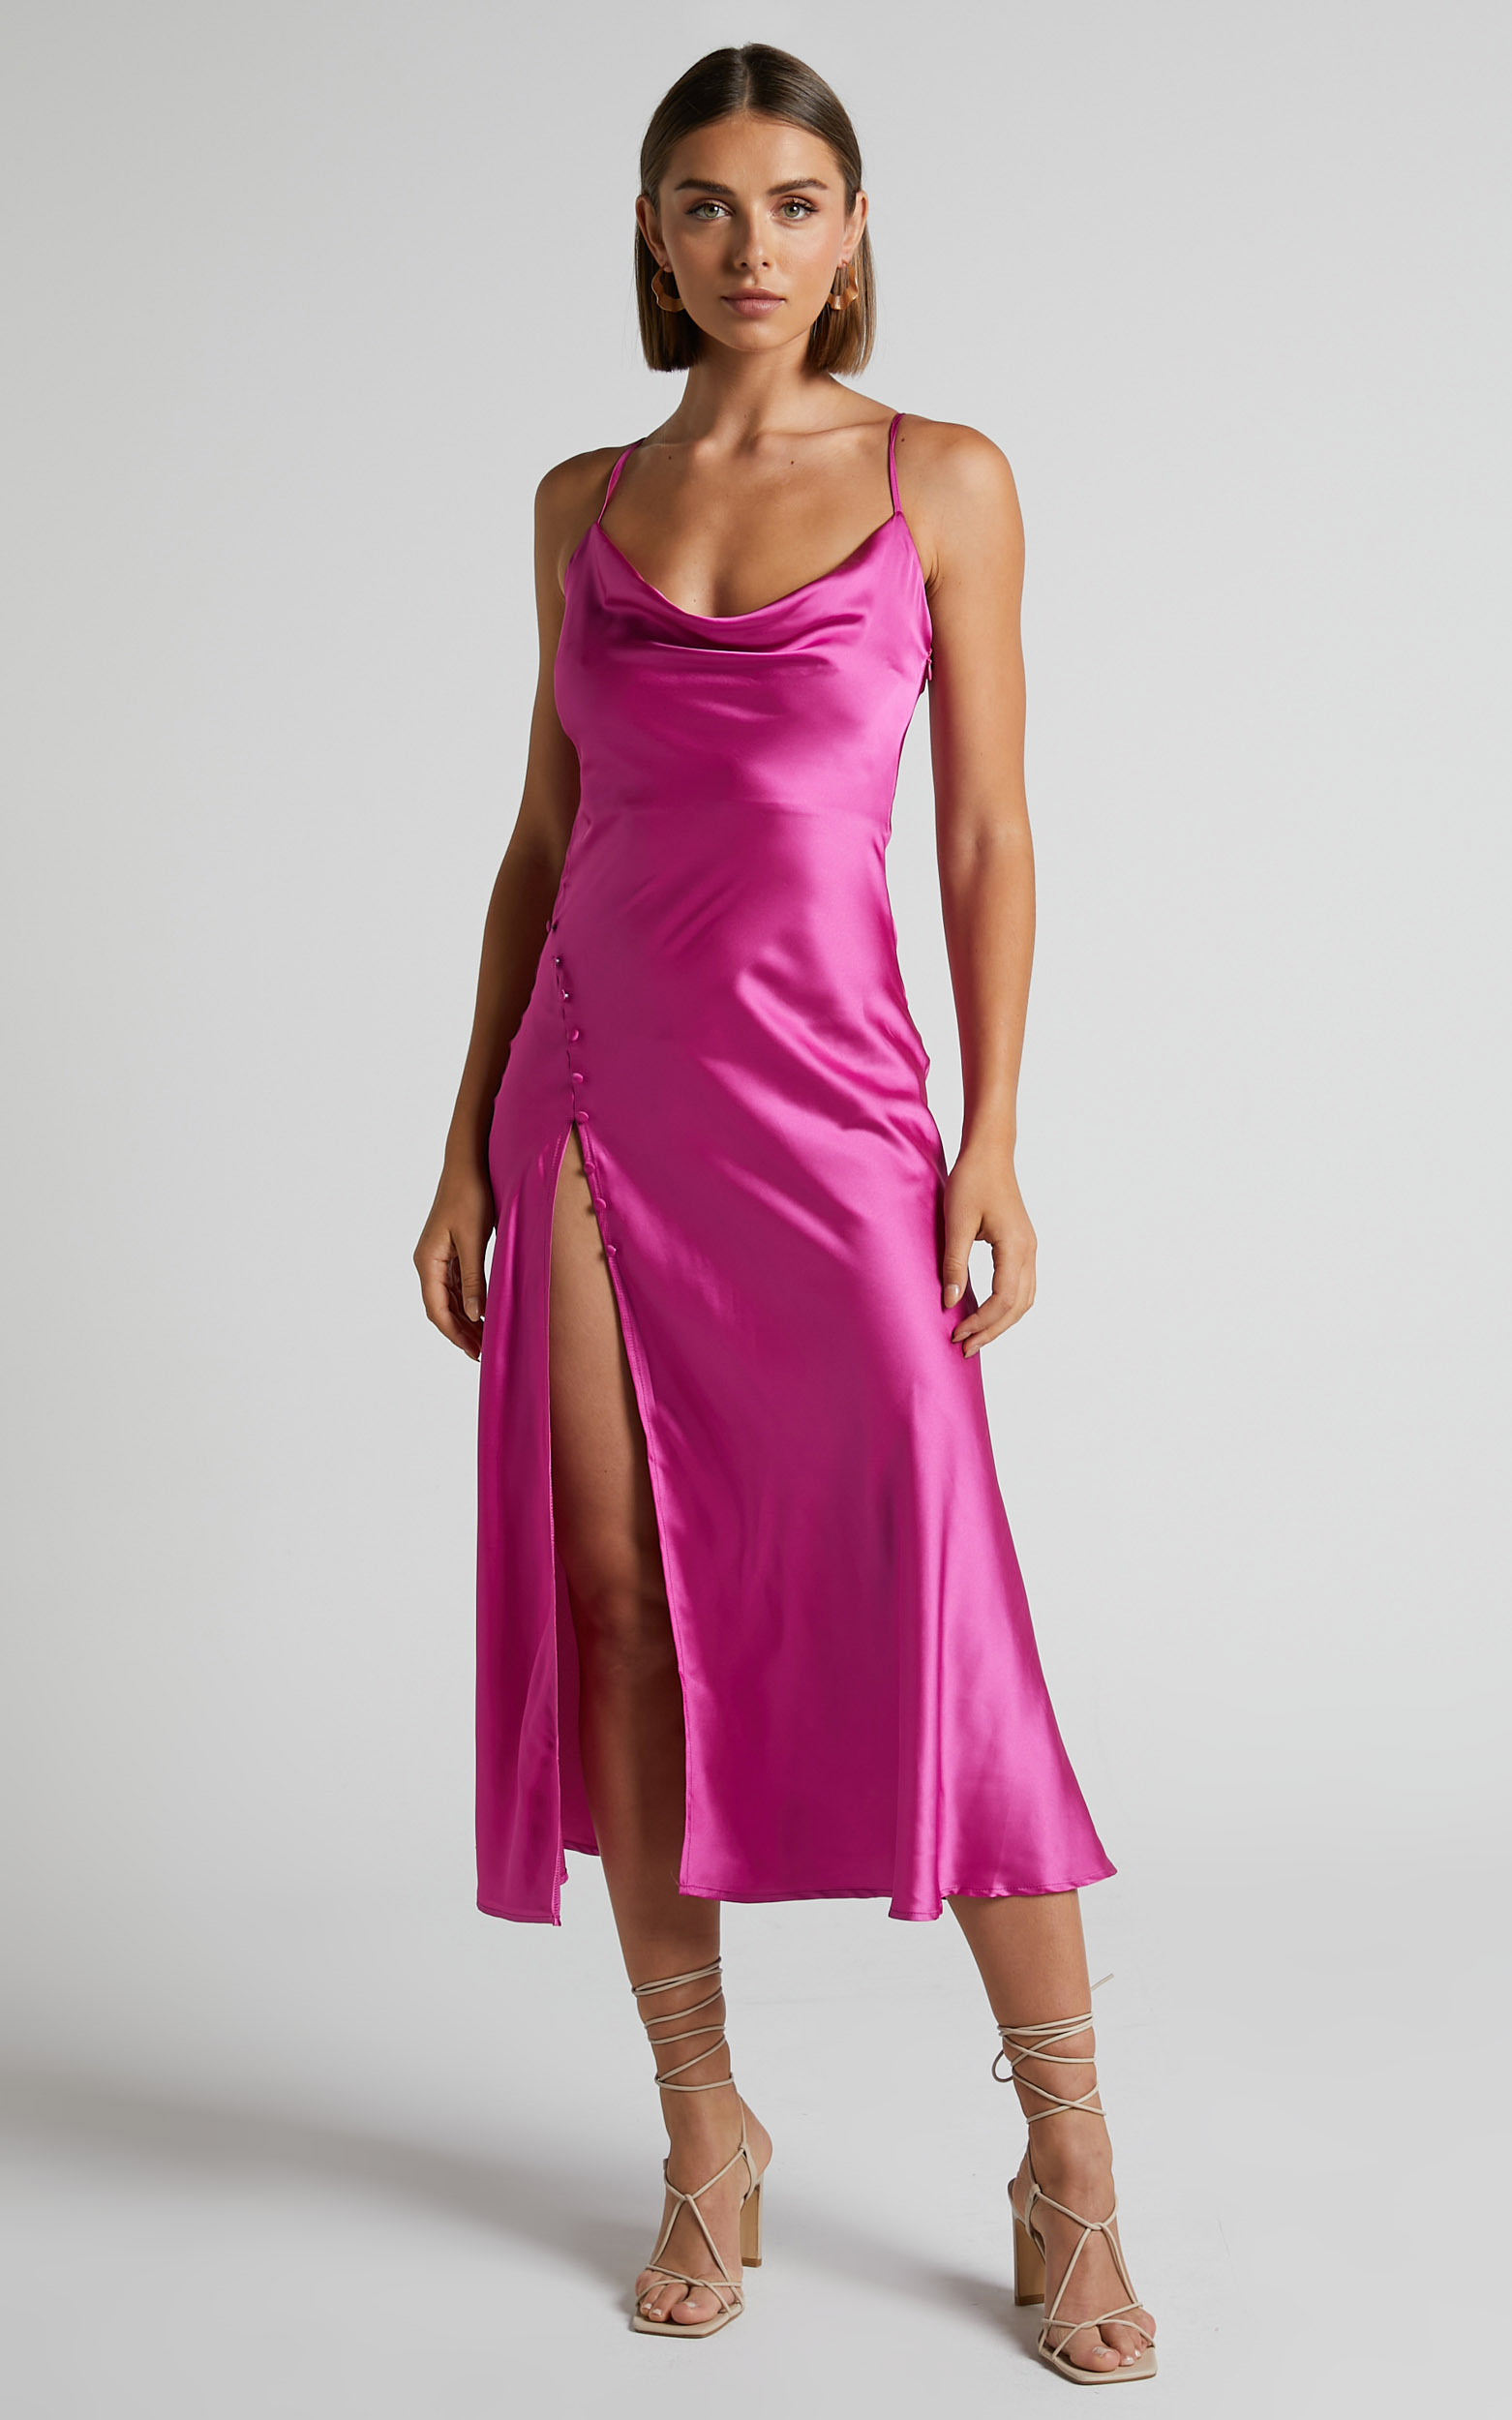 Flordeliza Midi Dress - Cowl Neck Thigh Slit Slip Dress in Pink - 04, PNK1, hi-res image number null